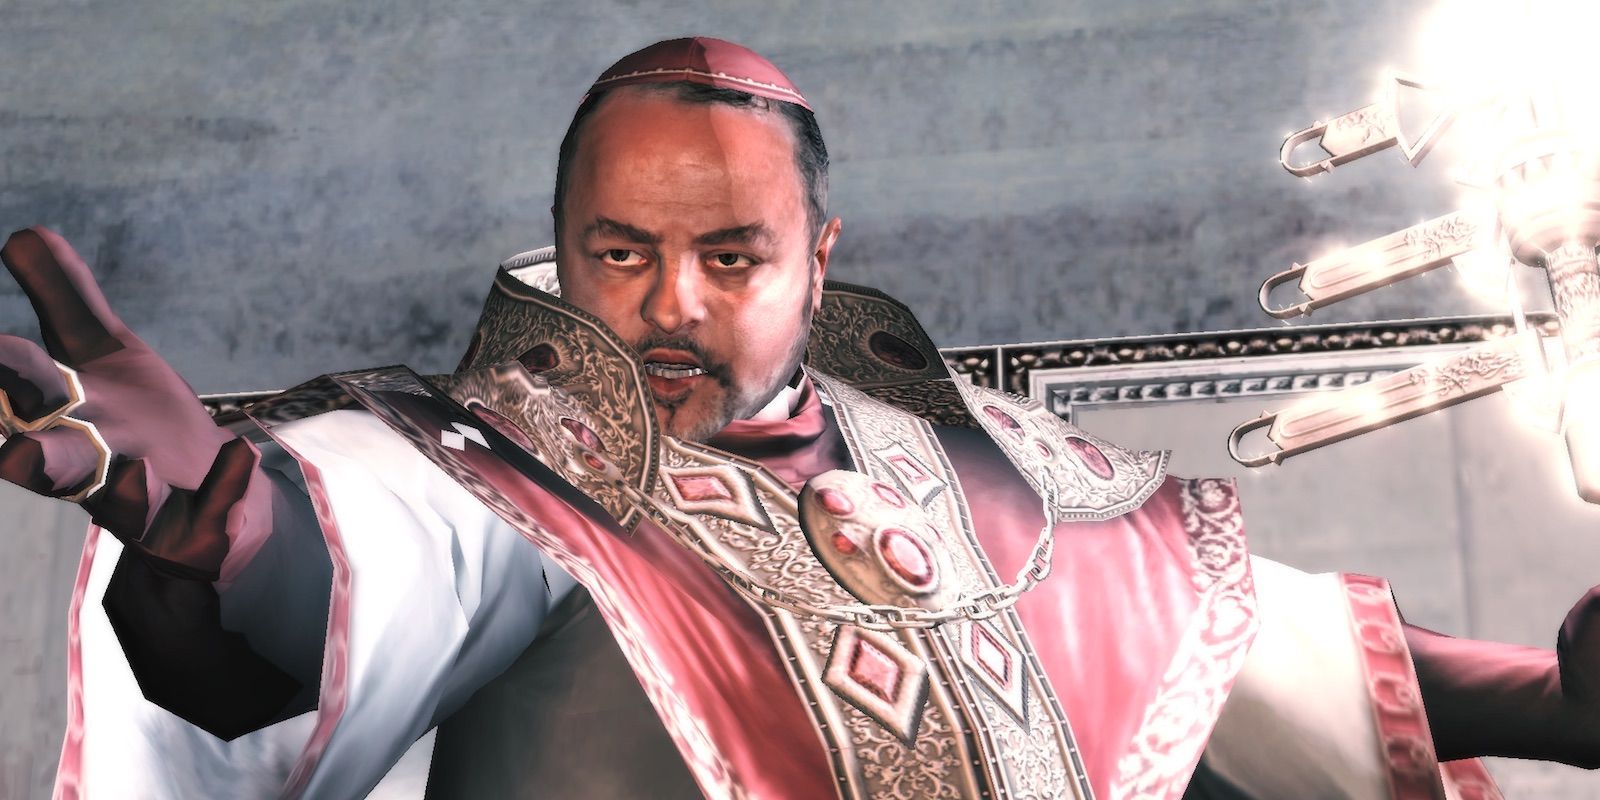 Rodrigo Borgia with the Staff of Eden in Assassin's Creed II